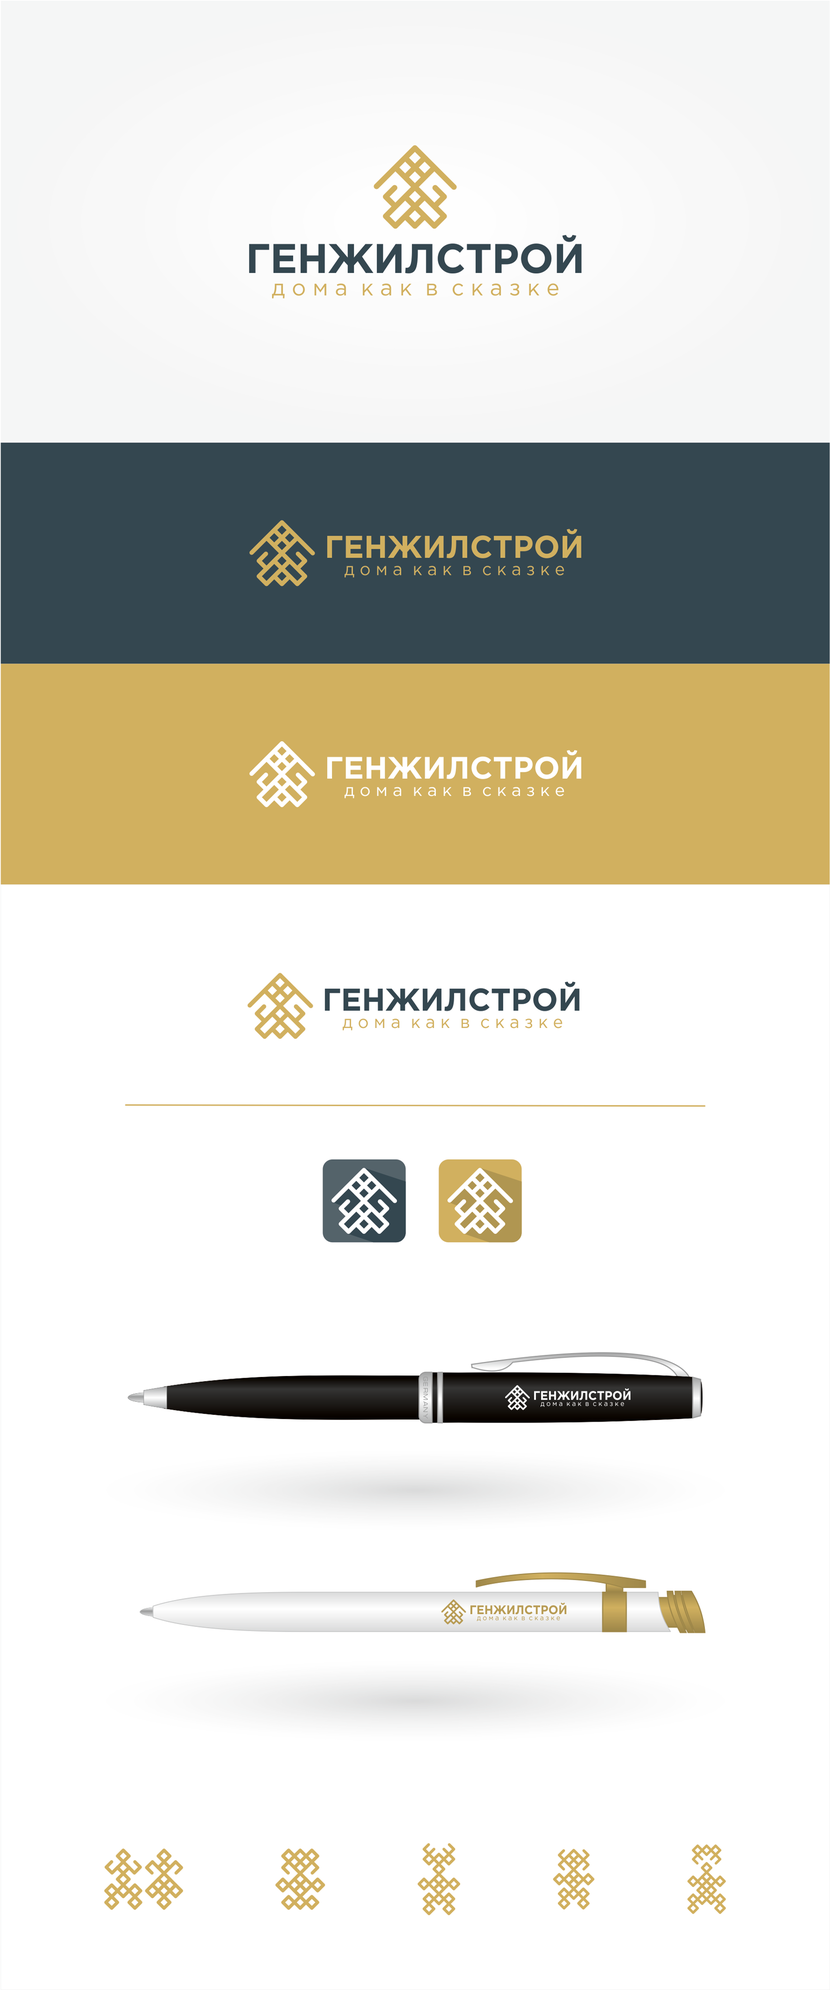 Создание логотипа и фирменного стиля для строительной компании (изготовление деревянных домов)  -  автор Павел Макарь